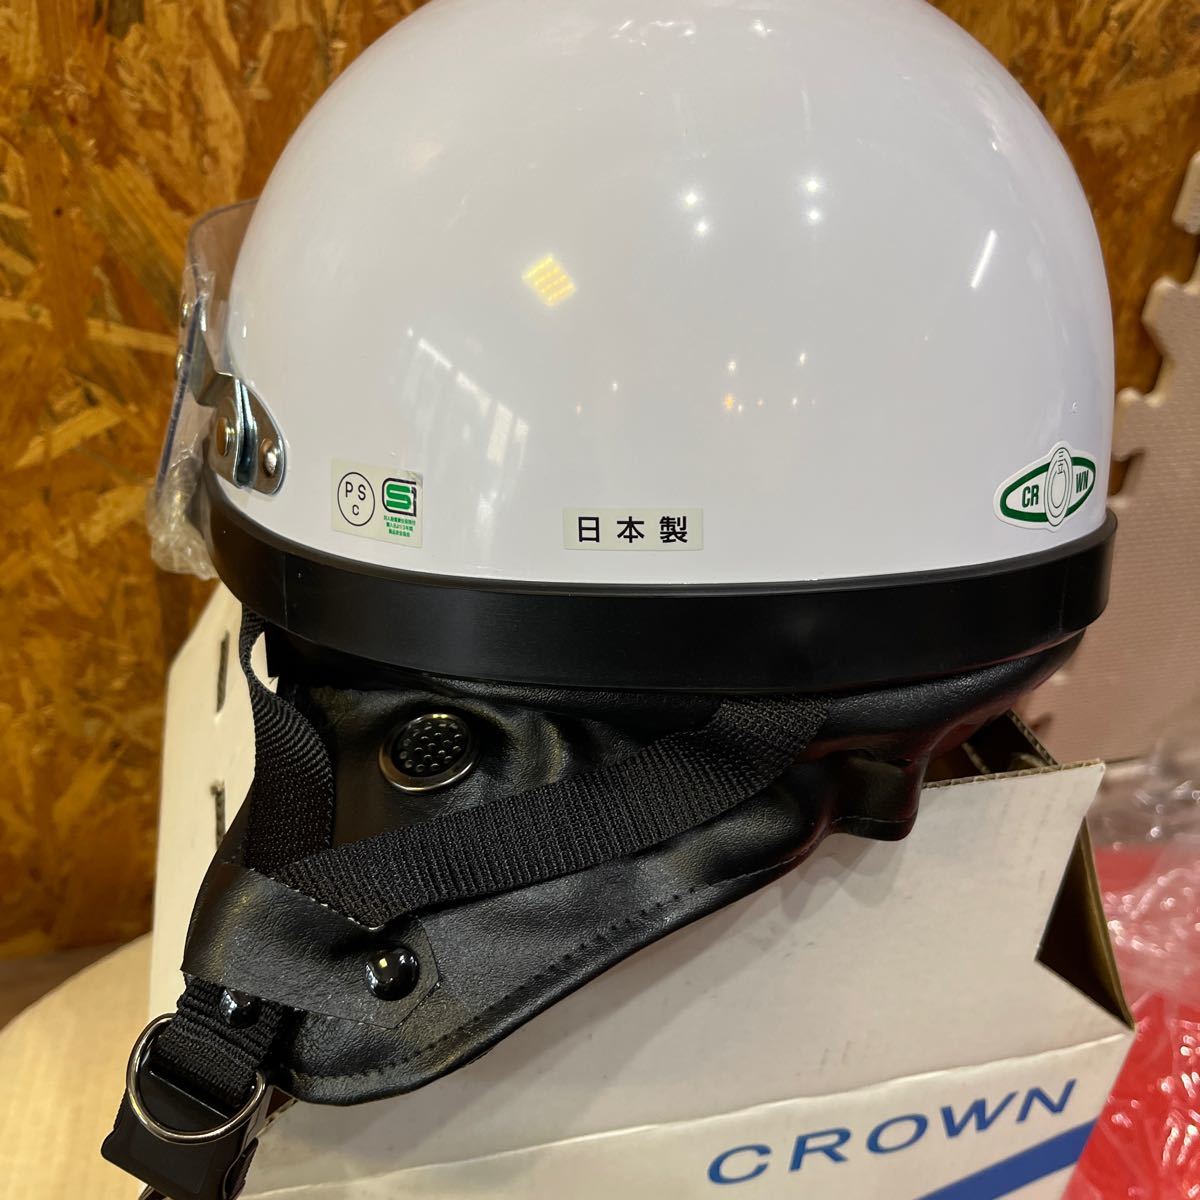  не использовался три . сборный CROWN semi-hat шлем SR-77 L/ белый / защита * уголок данный .* с коробкой / сделано в Японии / semi-cap / Crown / мотоцикл 